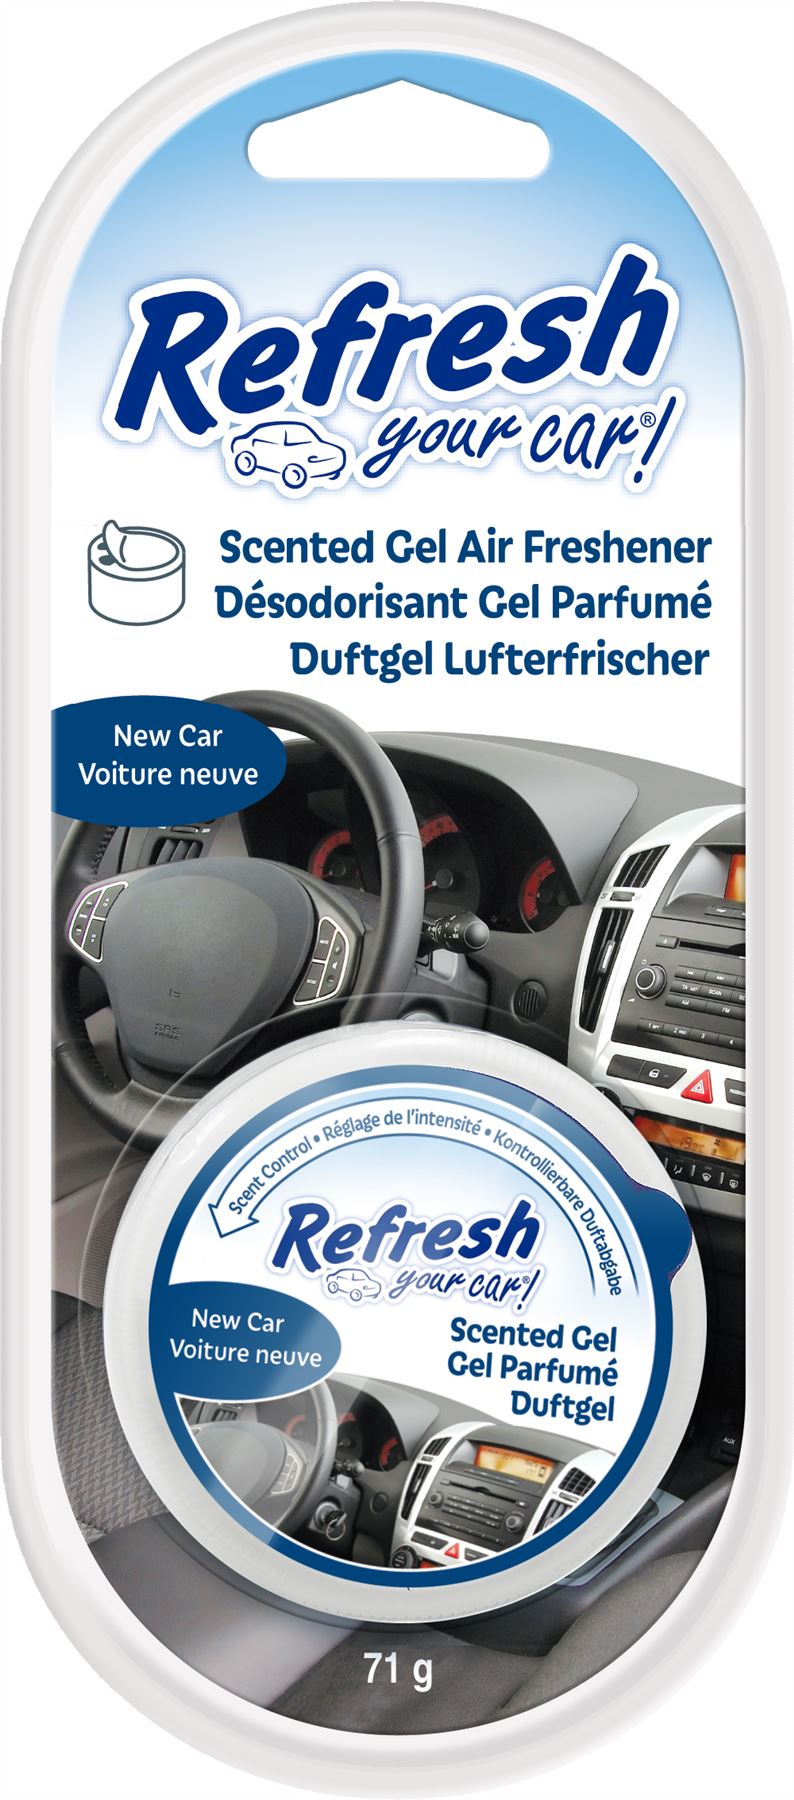 Refresh Your Car 301410900 Air freshener Gel Can 2.5oz New Car